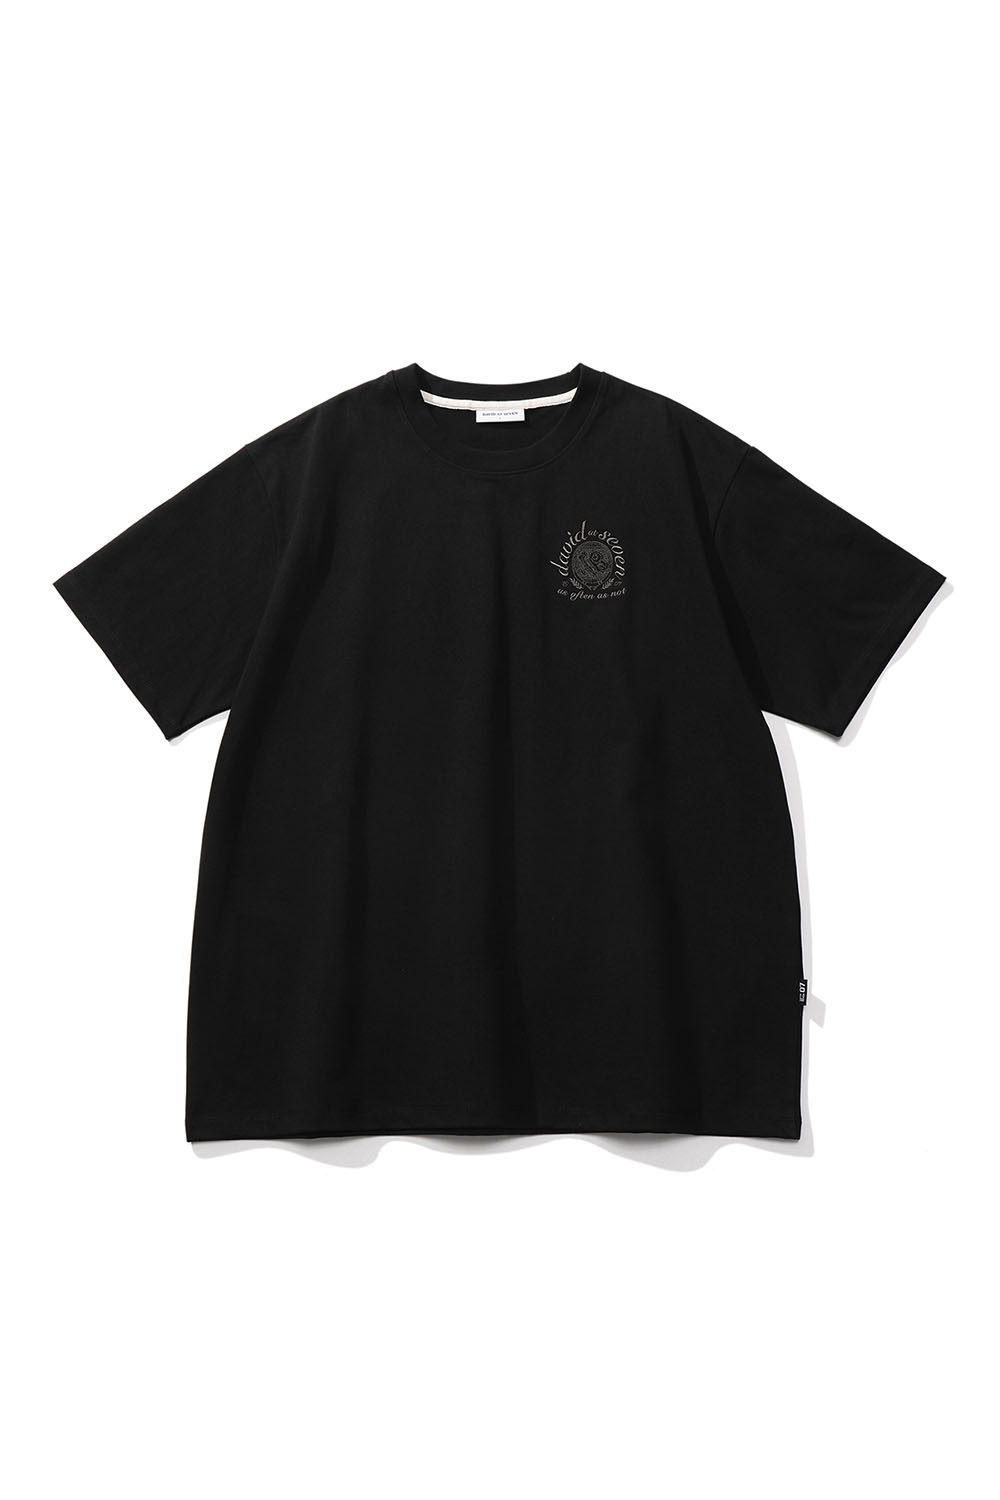 (단독가) Sunny-Side Up Racket T-shirts (black) RICHEZ